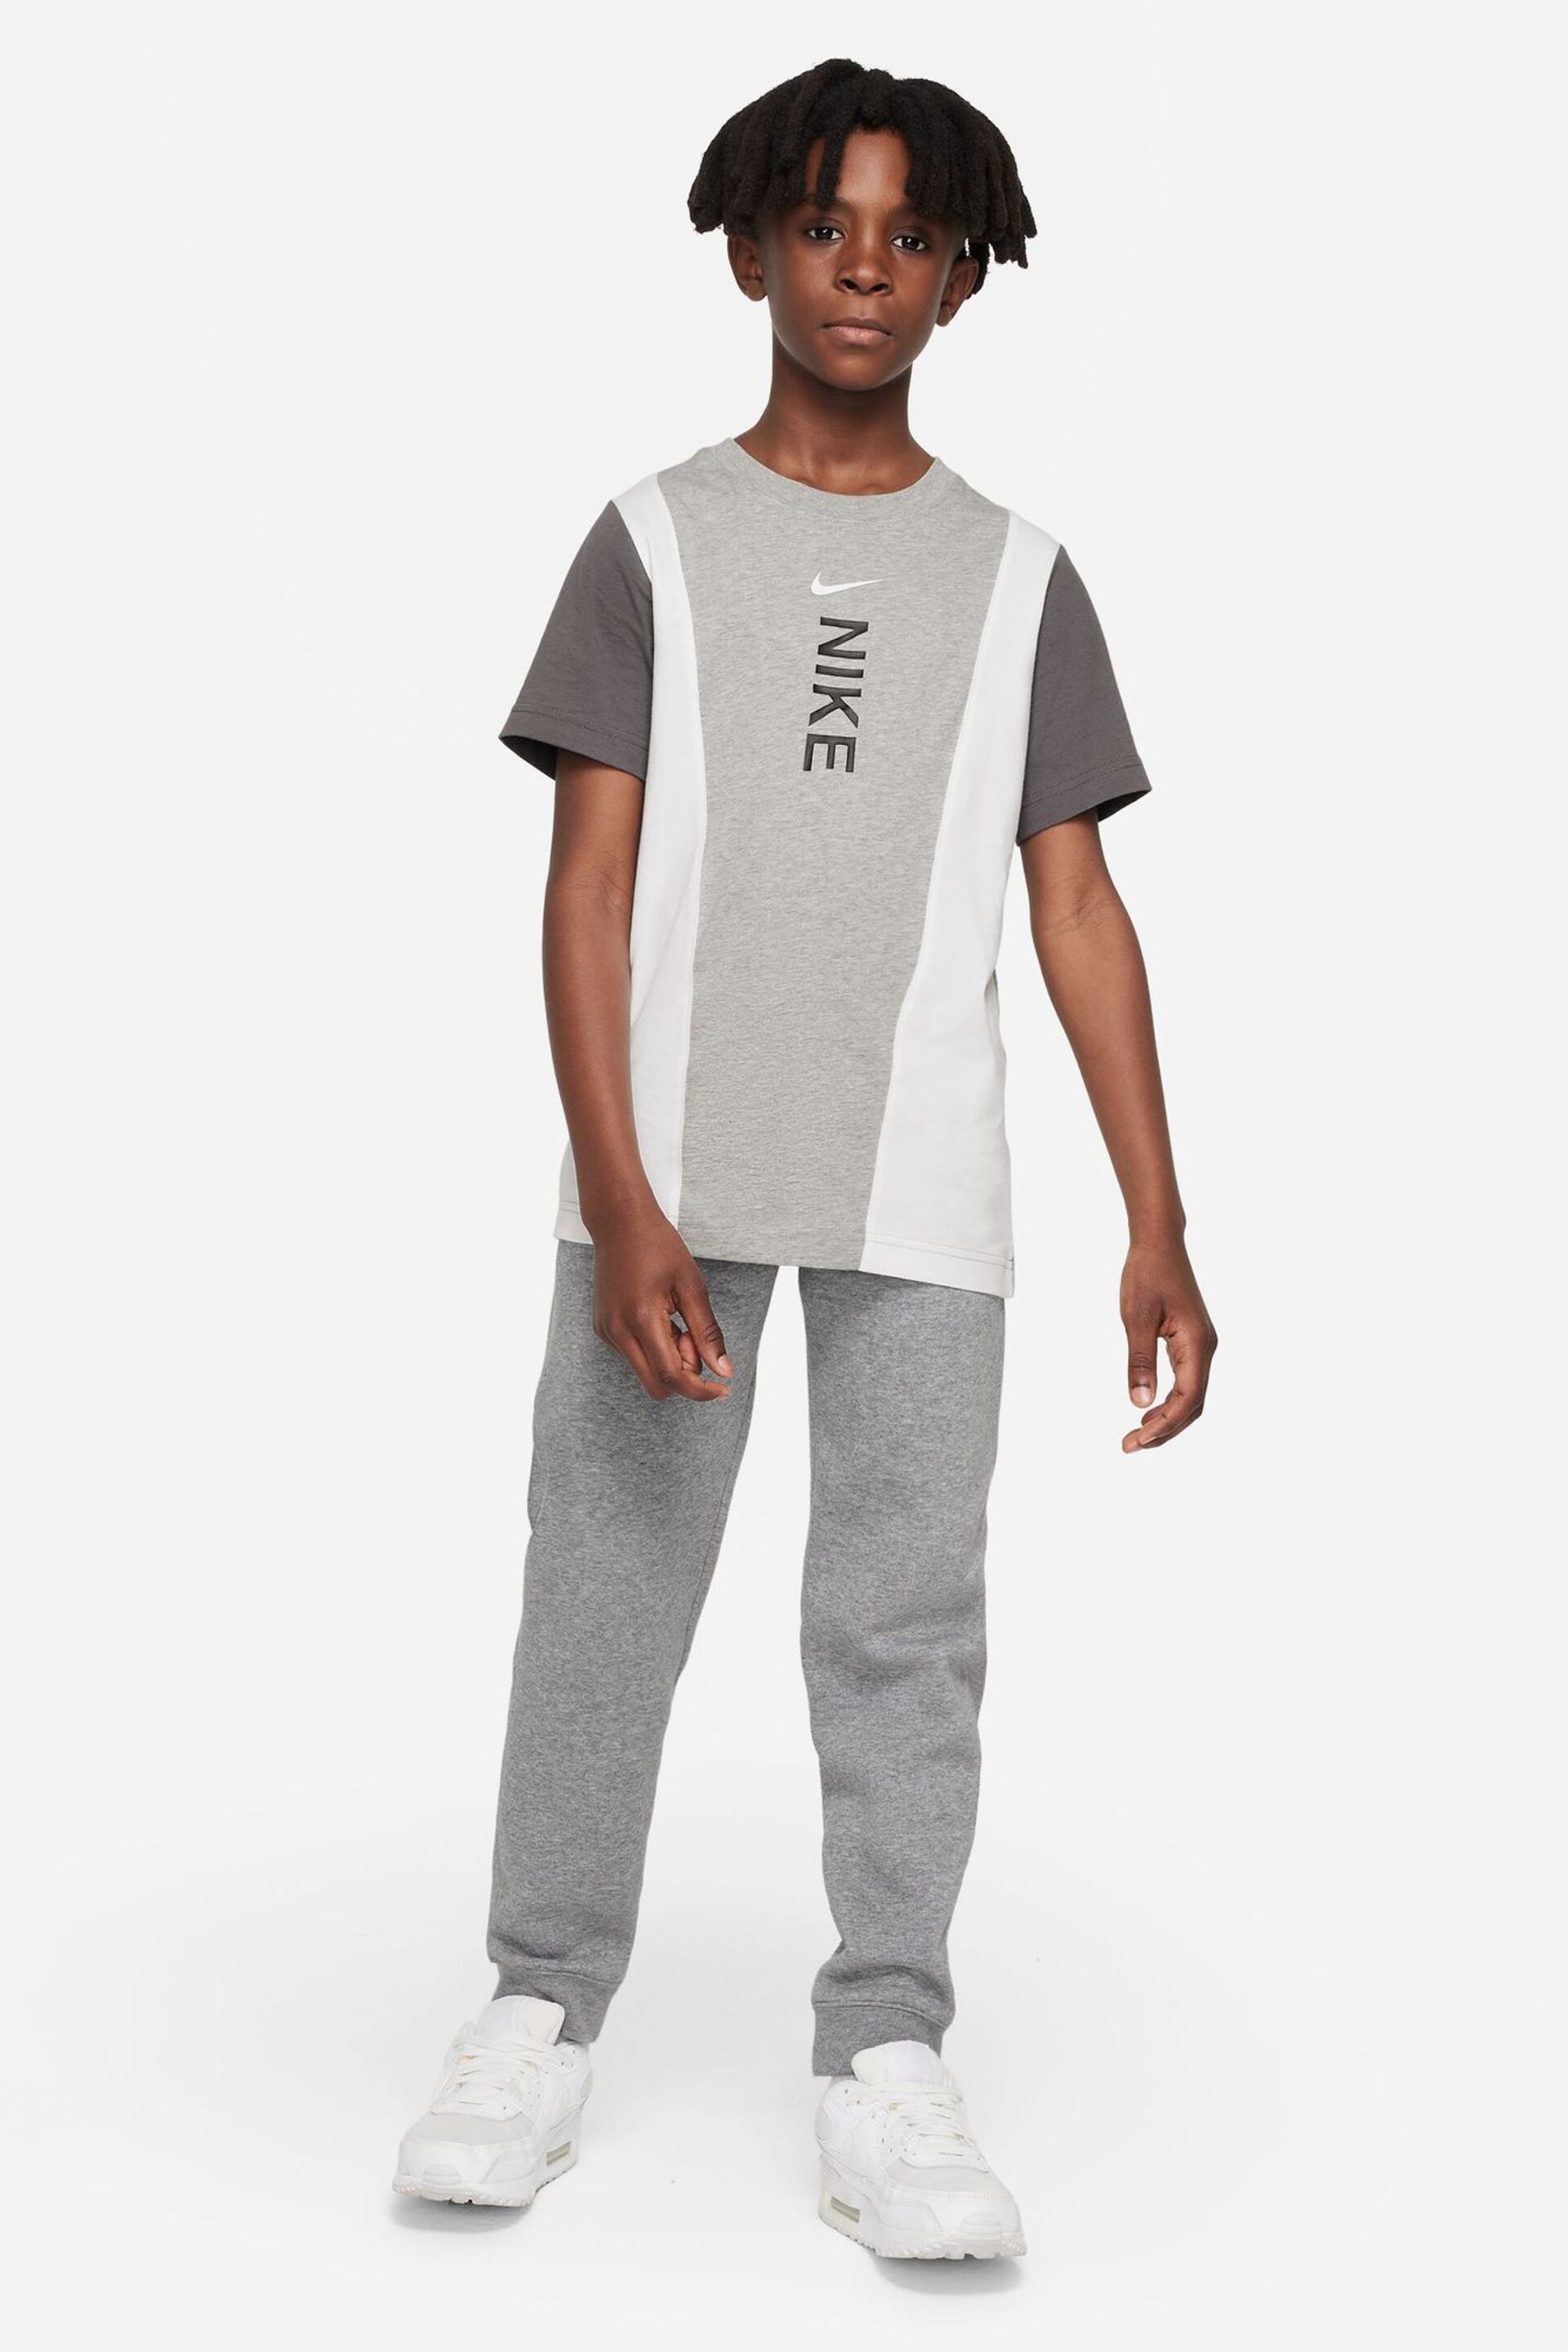 Nike Grey Hybrid T-Shirt - Image 3 of 4